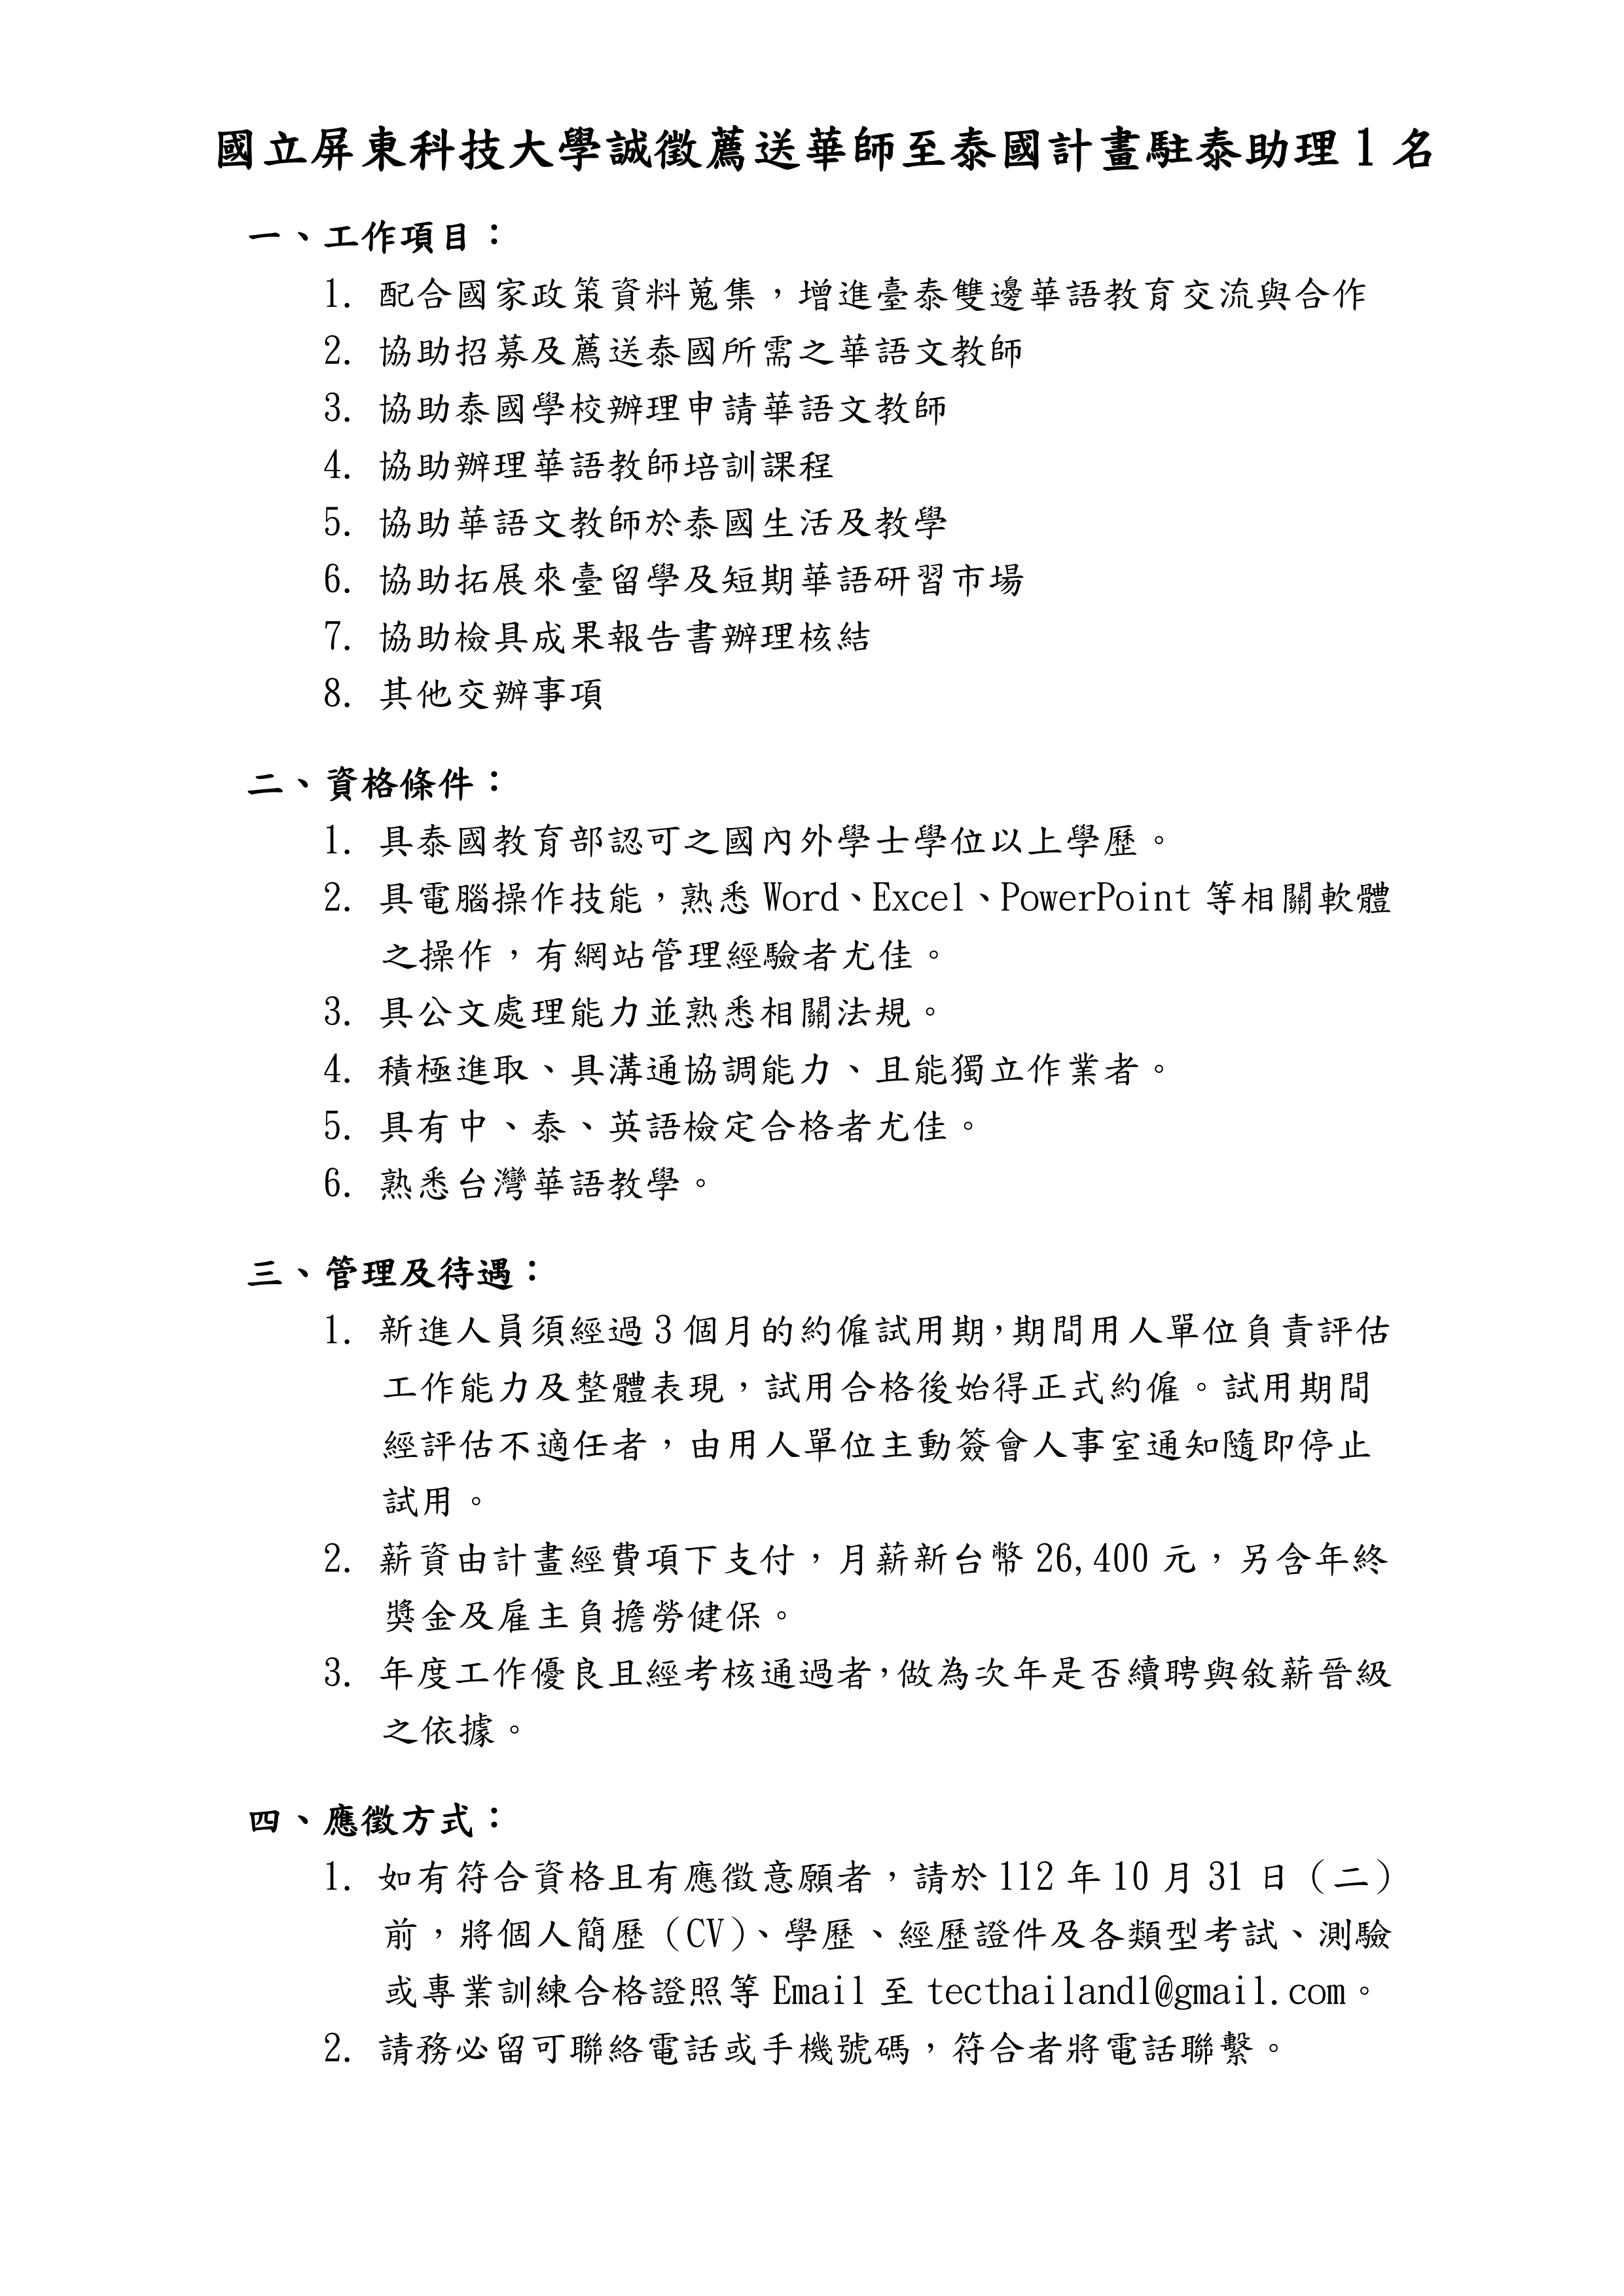 【18.10.2566】เปิดรับสมัครผู้ช่วยโครงการครูสอนภาษาจีนชาวไต้หวัน จำนวน 1 อัตรา